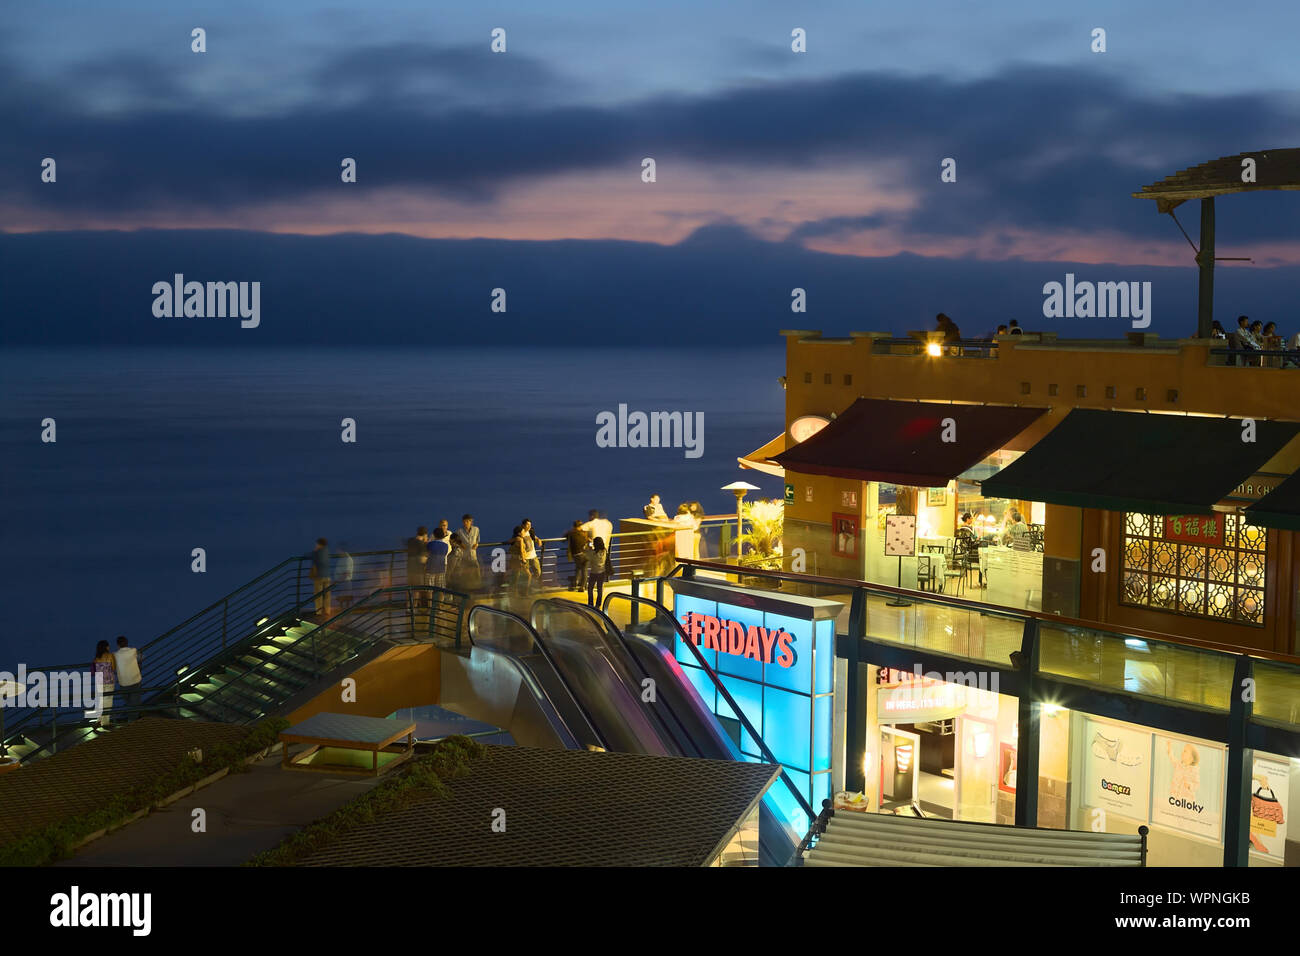 Tgi fridays bar hi-res stock photography and images - Alamy